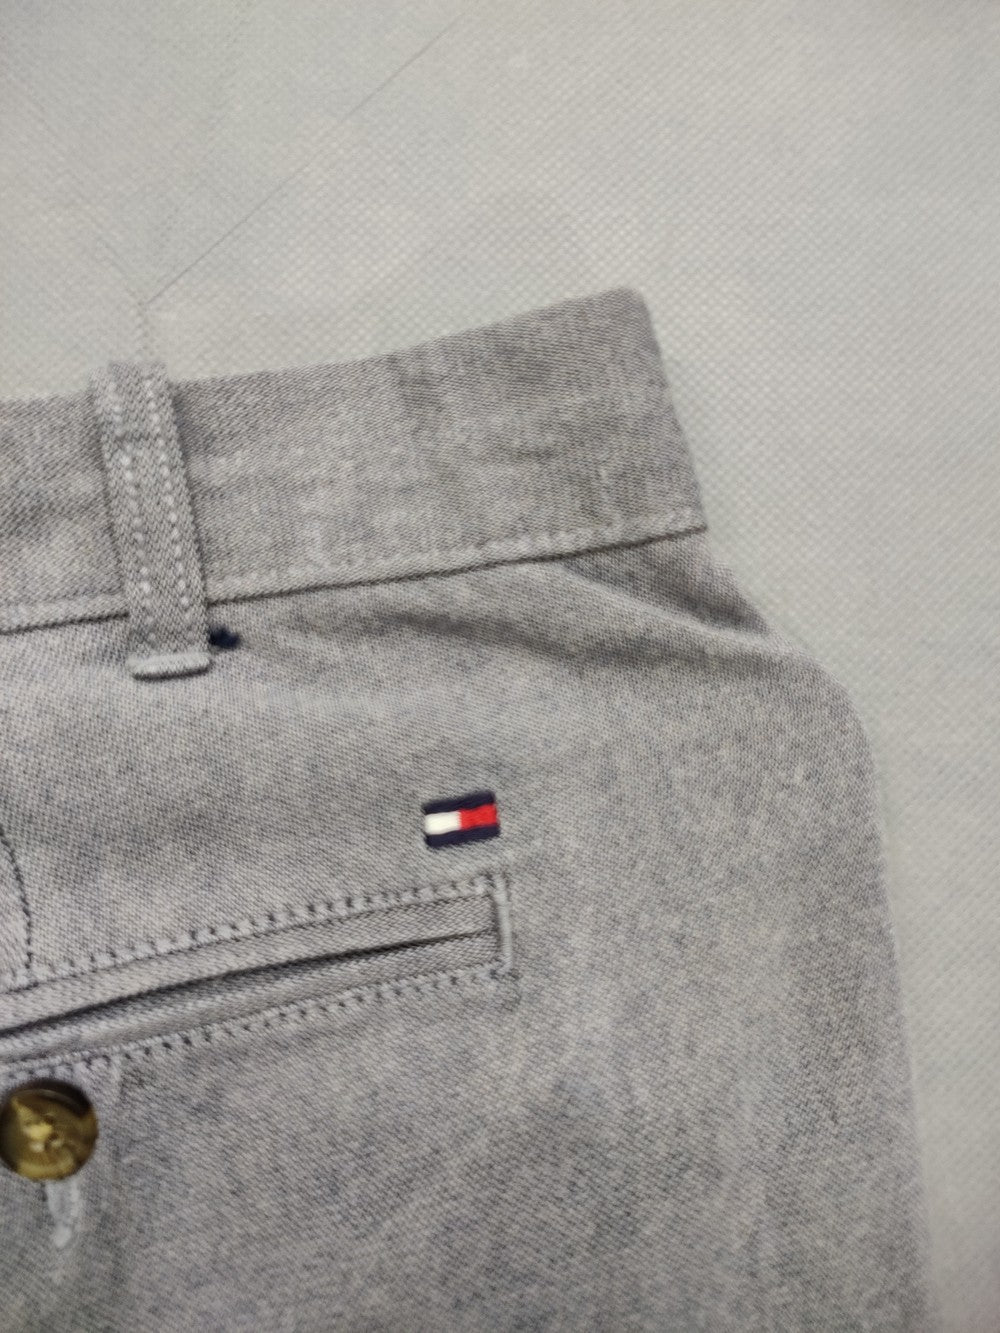 Tommy Hilfiger Branded Original Cotton Dress Pant For Men